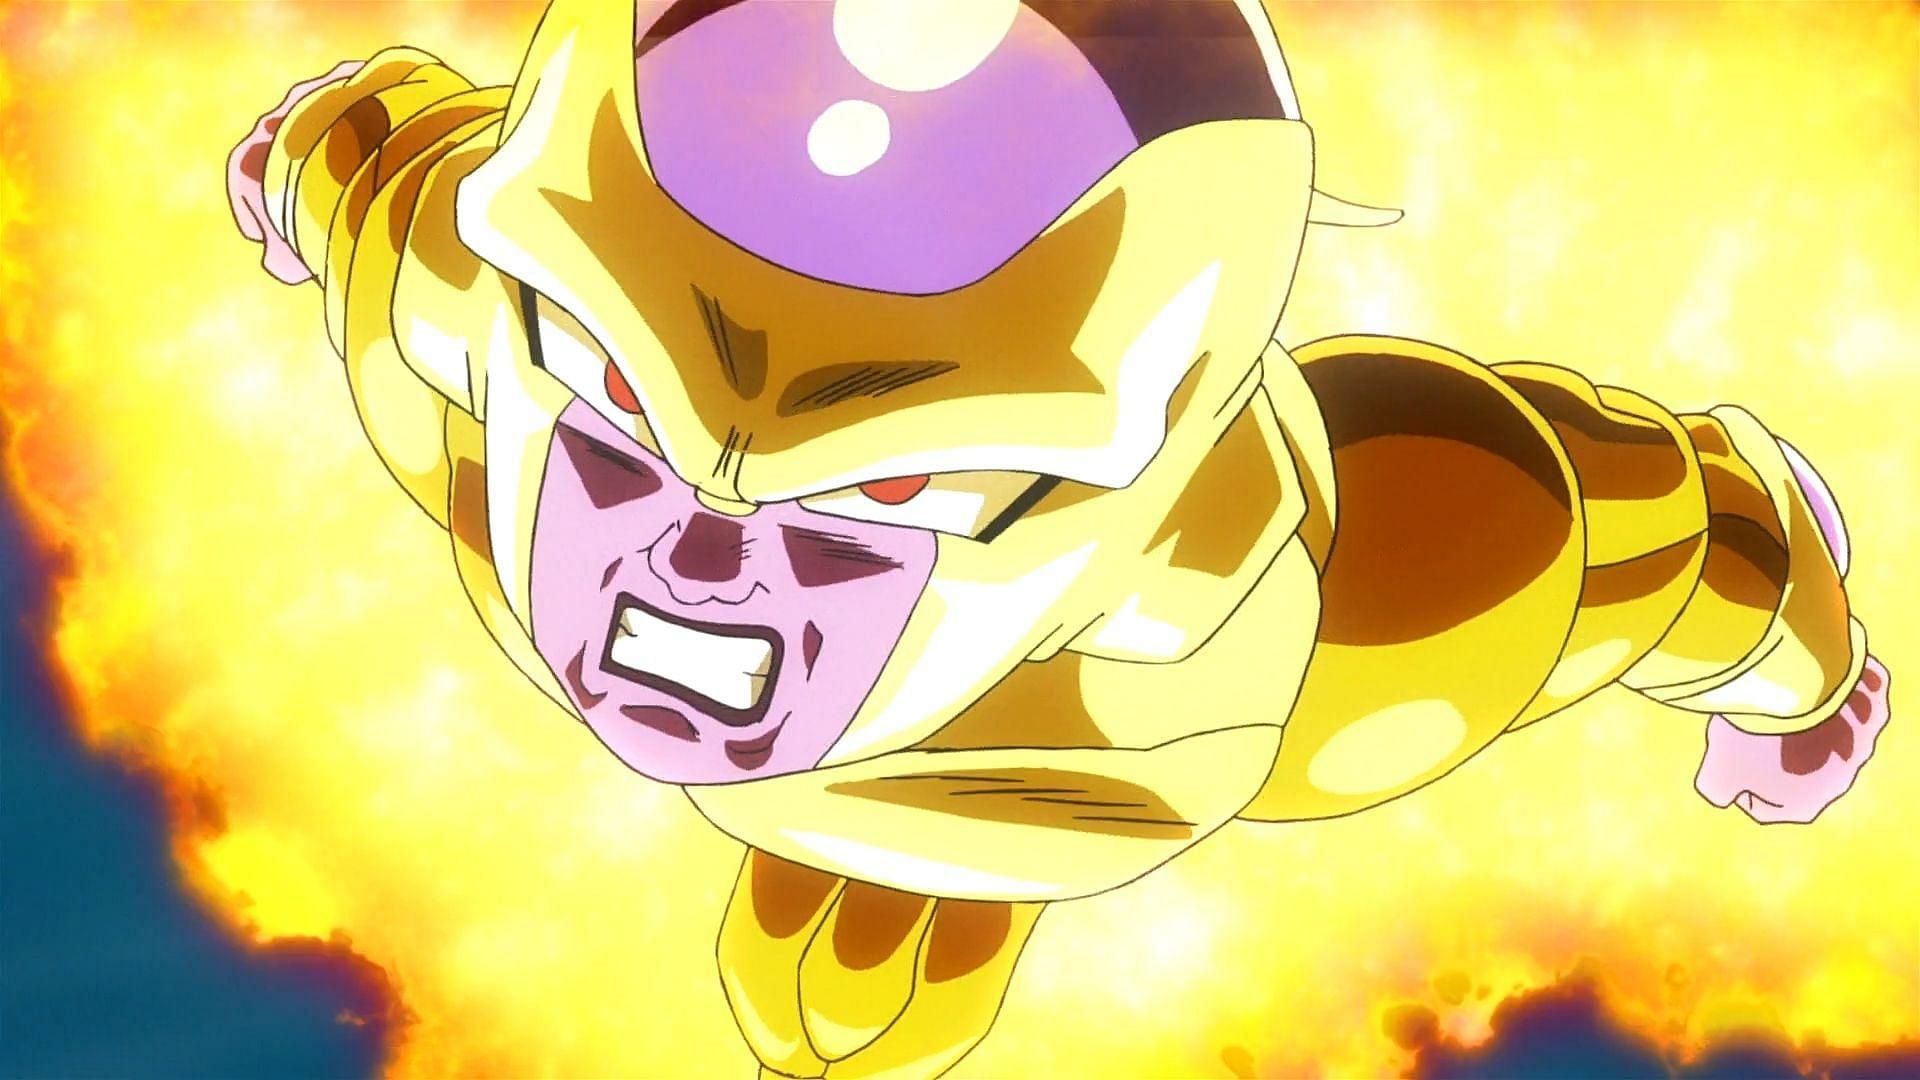 Golden Frieza in Dragon Ball Super! (Image via Toei Animation)